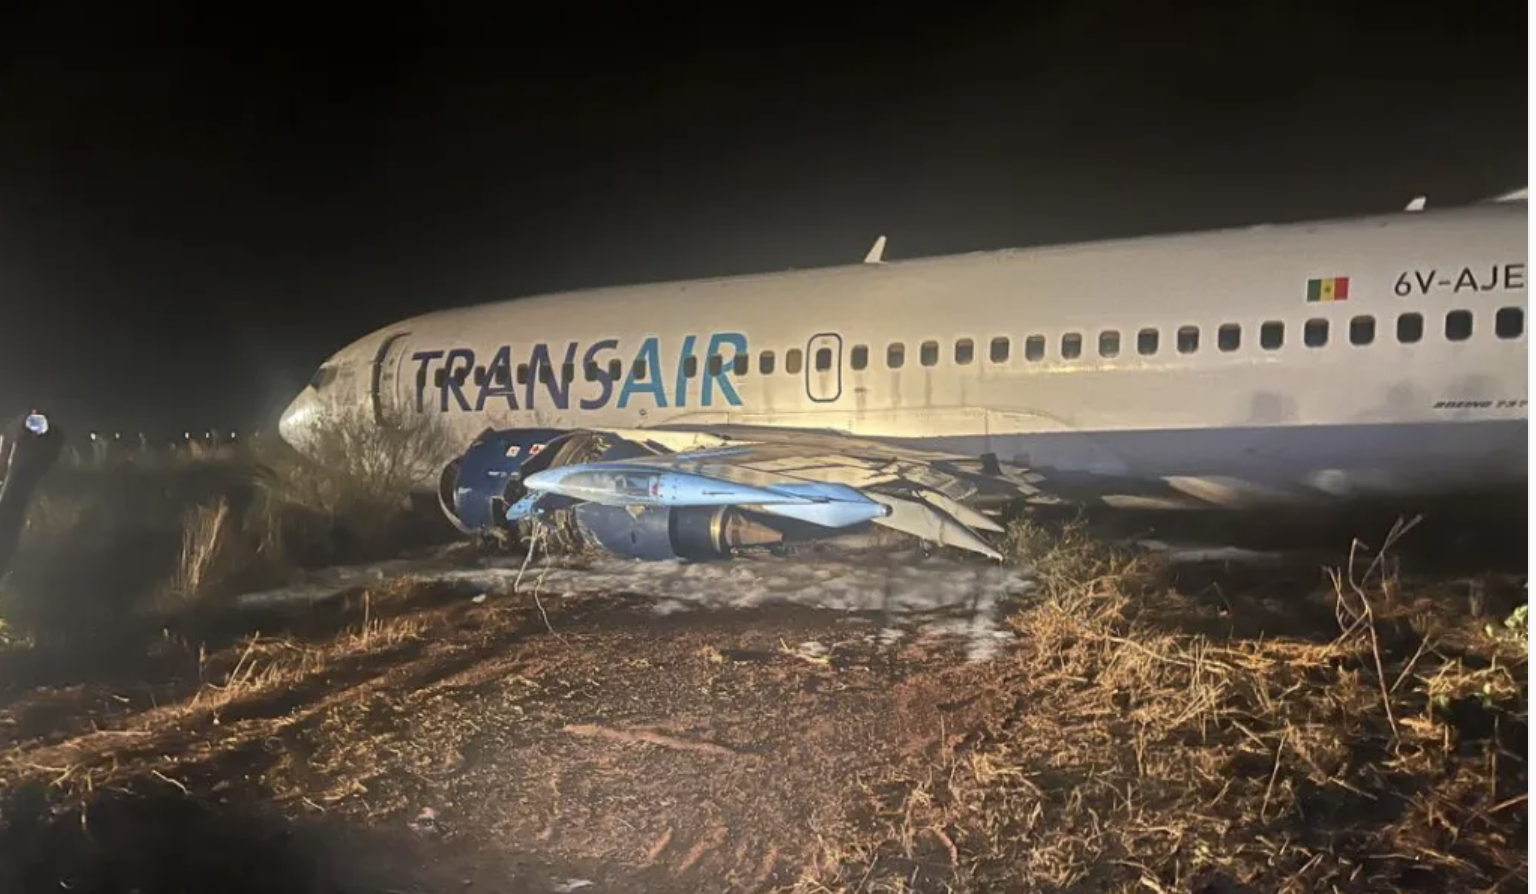 Accident de l’avion Transair : Ce que les experts américains ont découvert sur place…